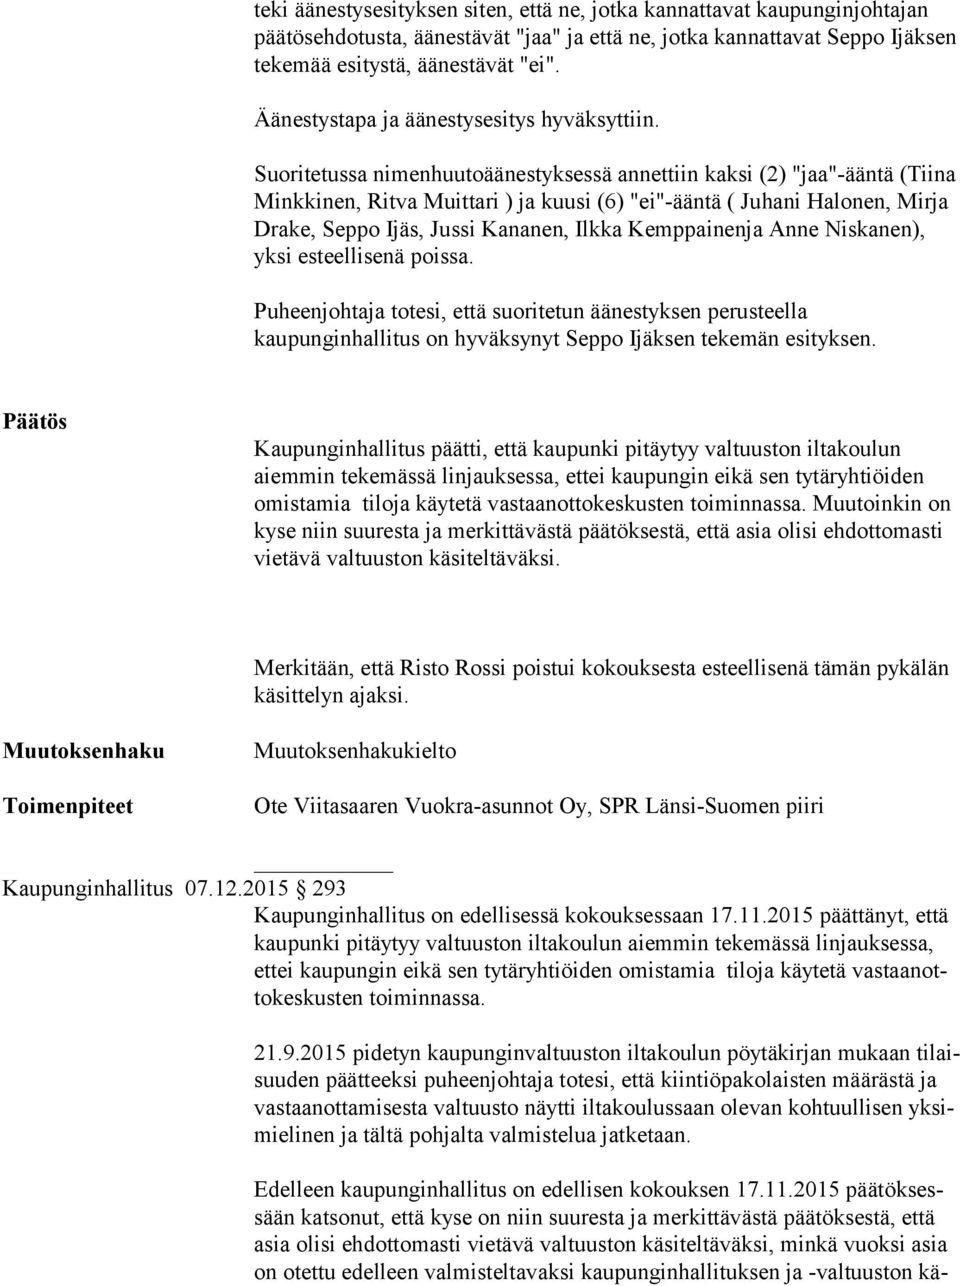 Suoritetussa nimenhuutoäänestyksessä annettiin kaksi (2) "jaa"-ääntä (Tiina Minkkinen, Ritva Muittari ) ja kuusi (6) "ei"-ääntä ( Juhani Halonen, Mirja Drake, Seppo Ijäs, Jussi Kananen, Ilkka